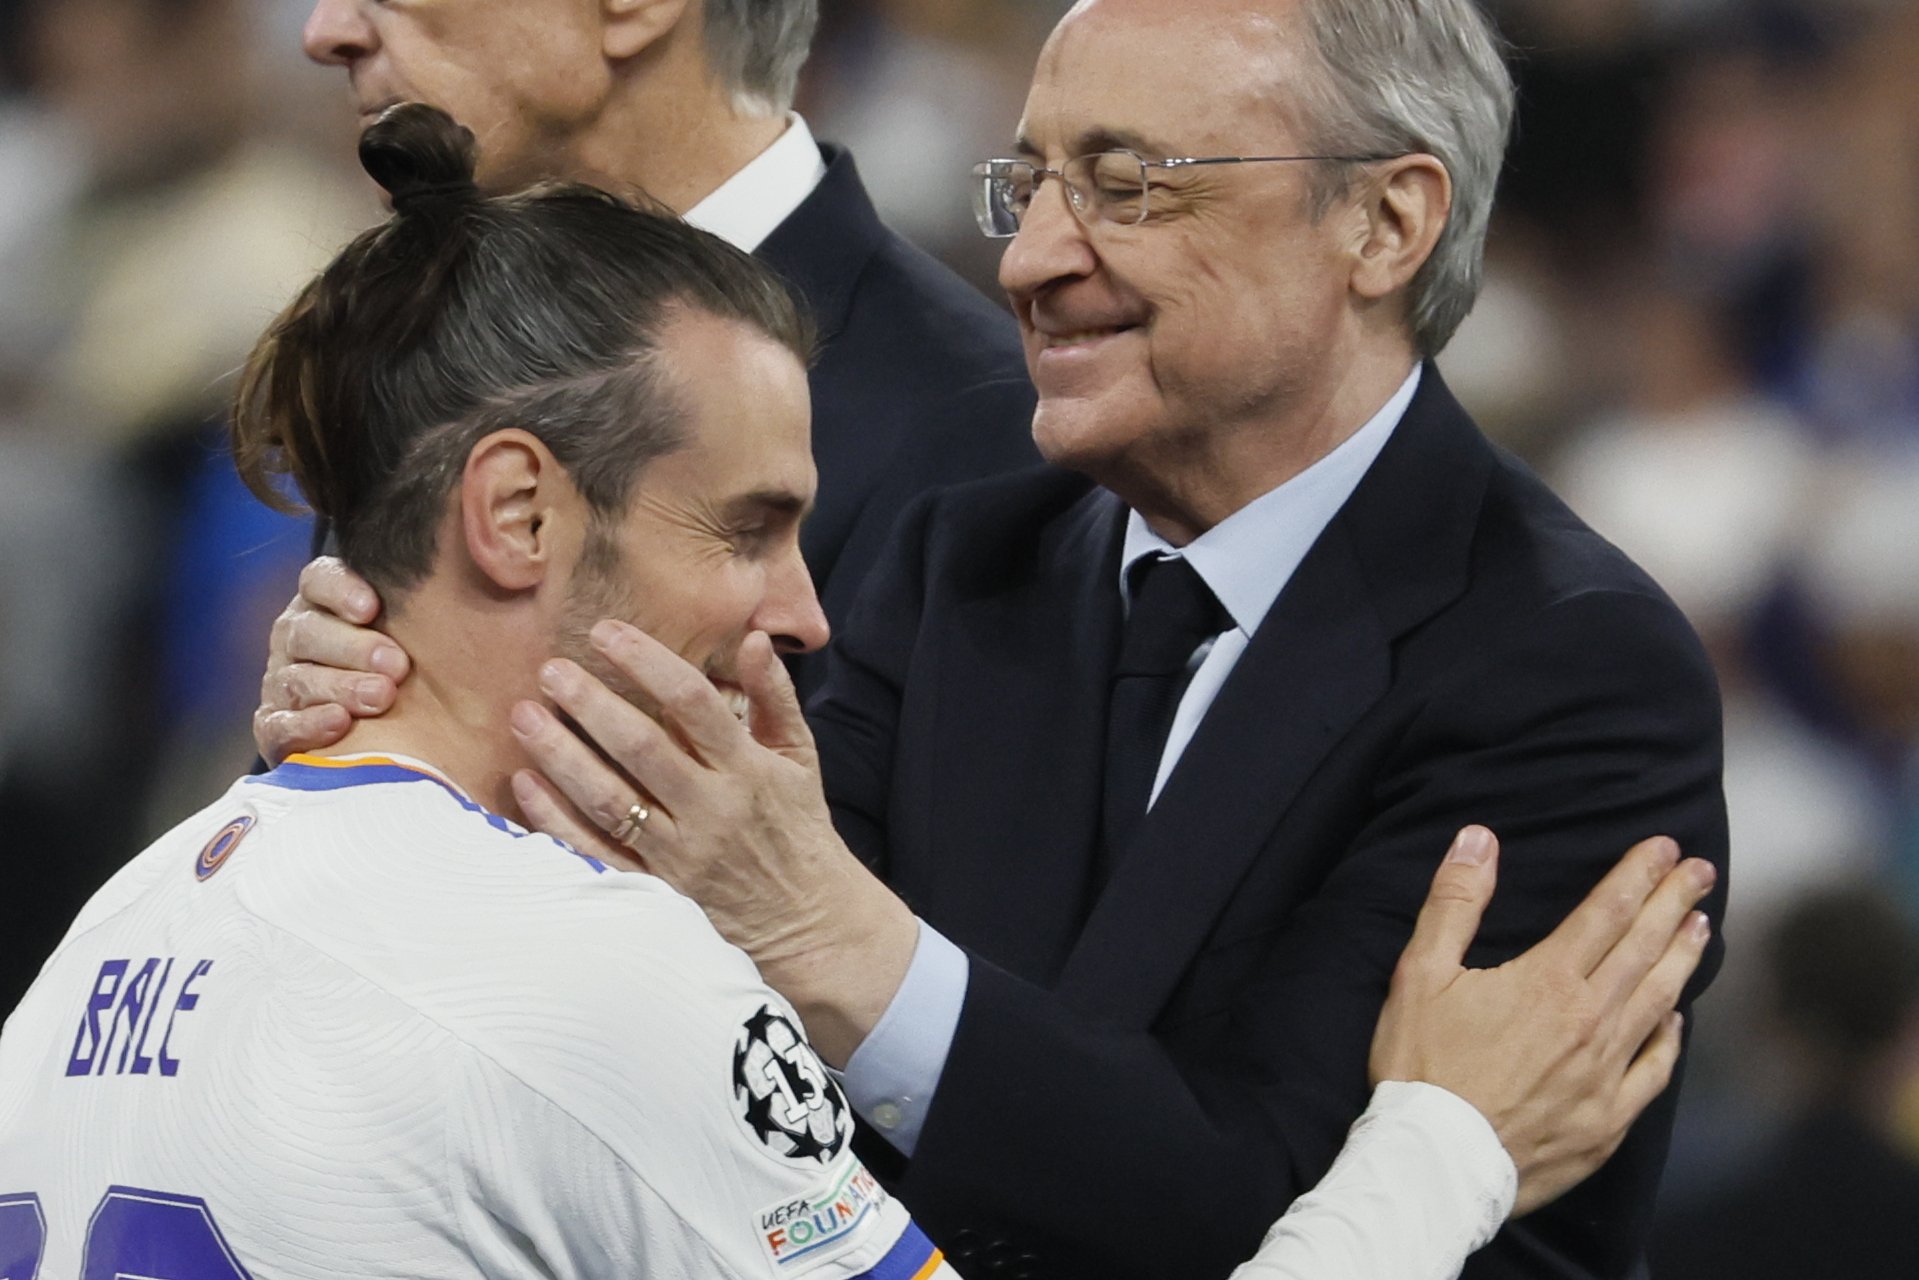 Avisa que farà com Bale i es quedarà al Reial Madrid per a anar-se gratis el 2023